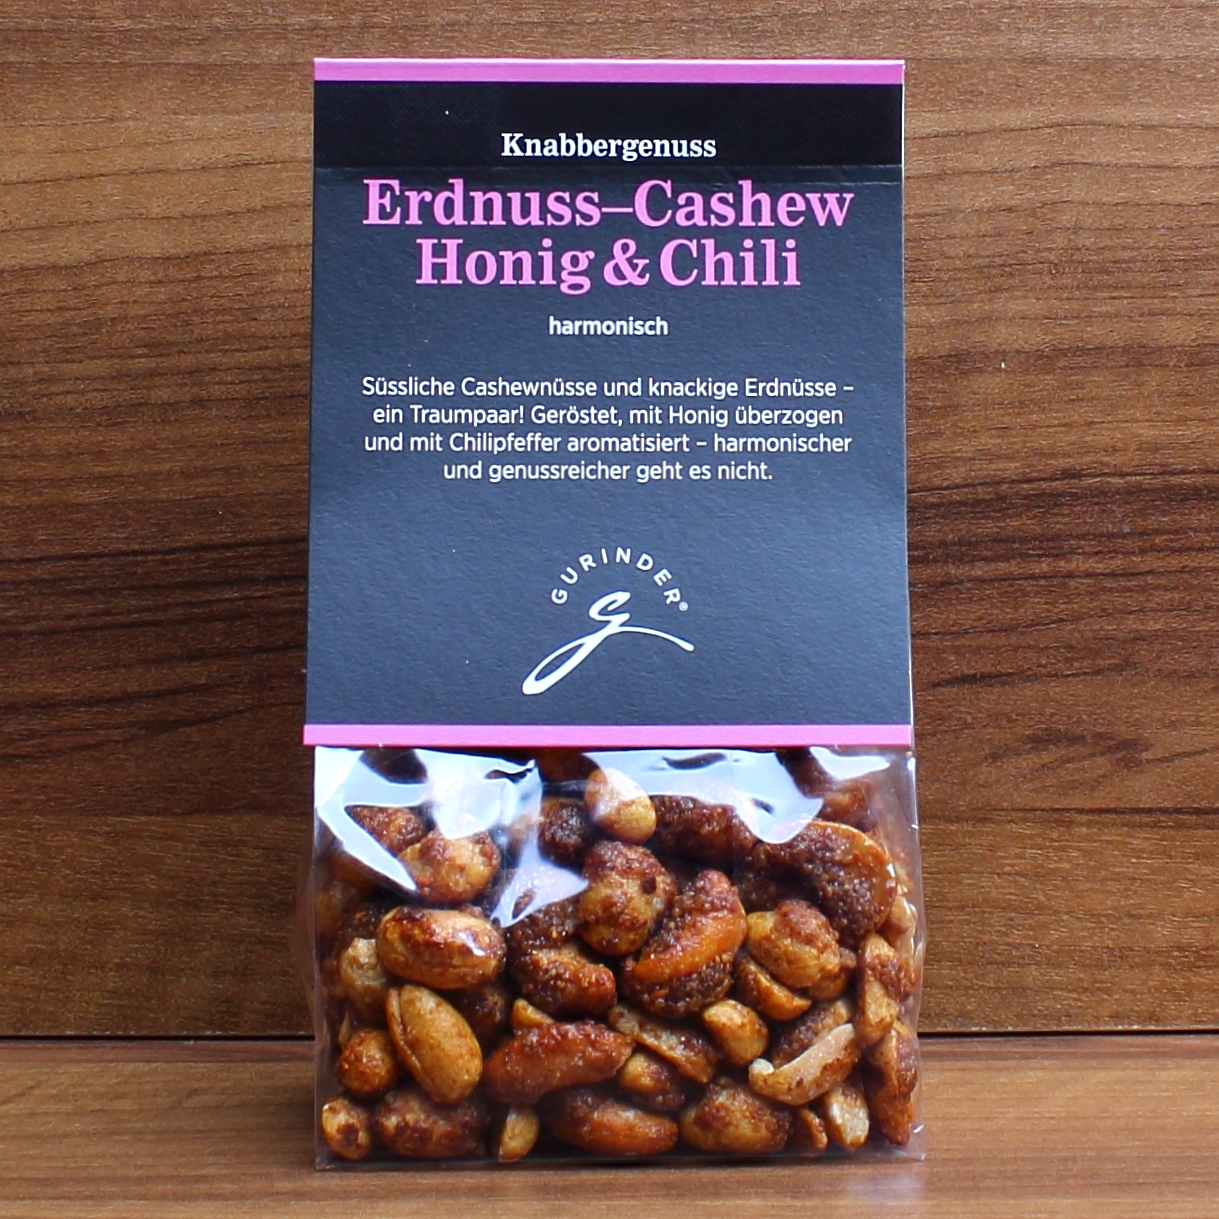 Erdnuss-Cashew Honig & Chili 